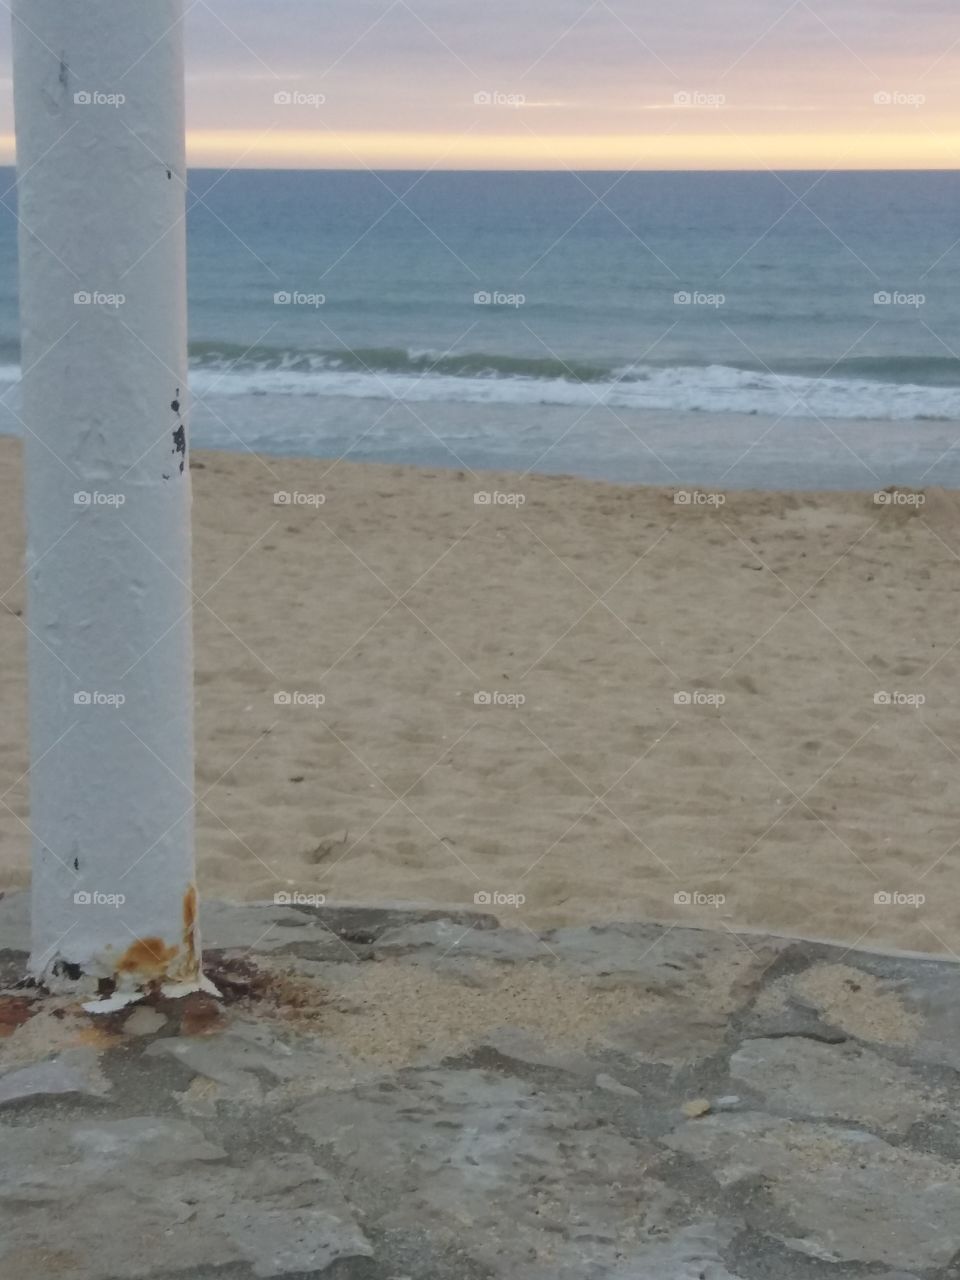 Beach in Portugal